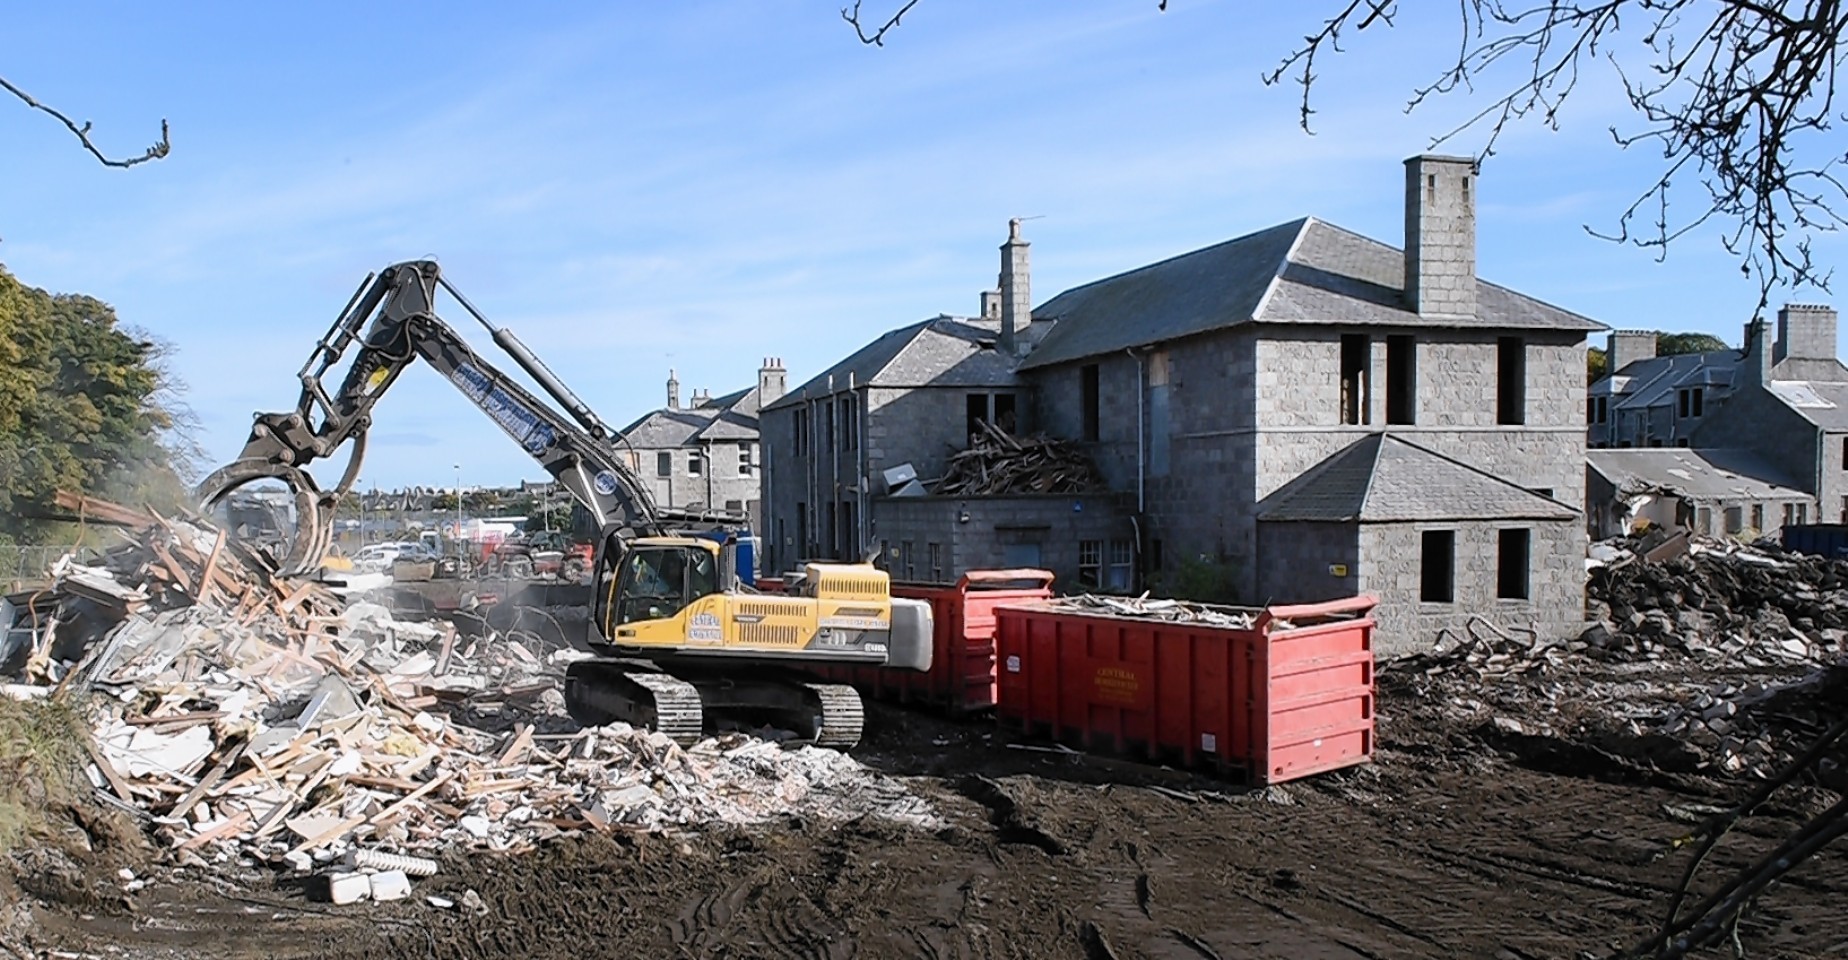 Demolition work at Cornhill Hospital in Aberdeen